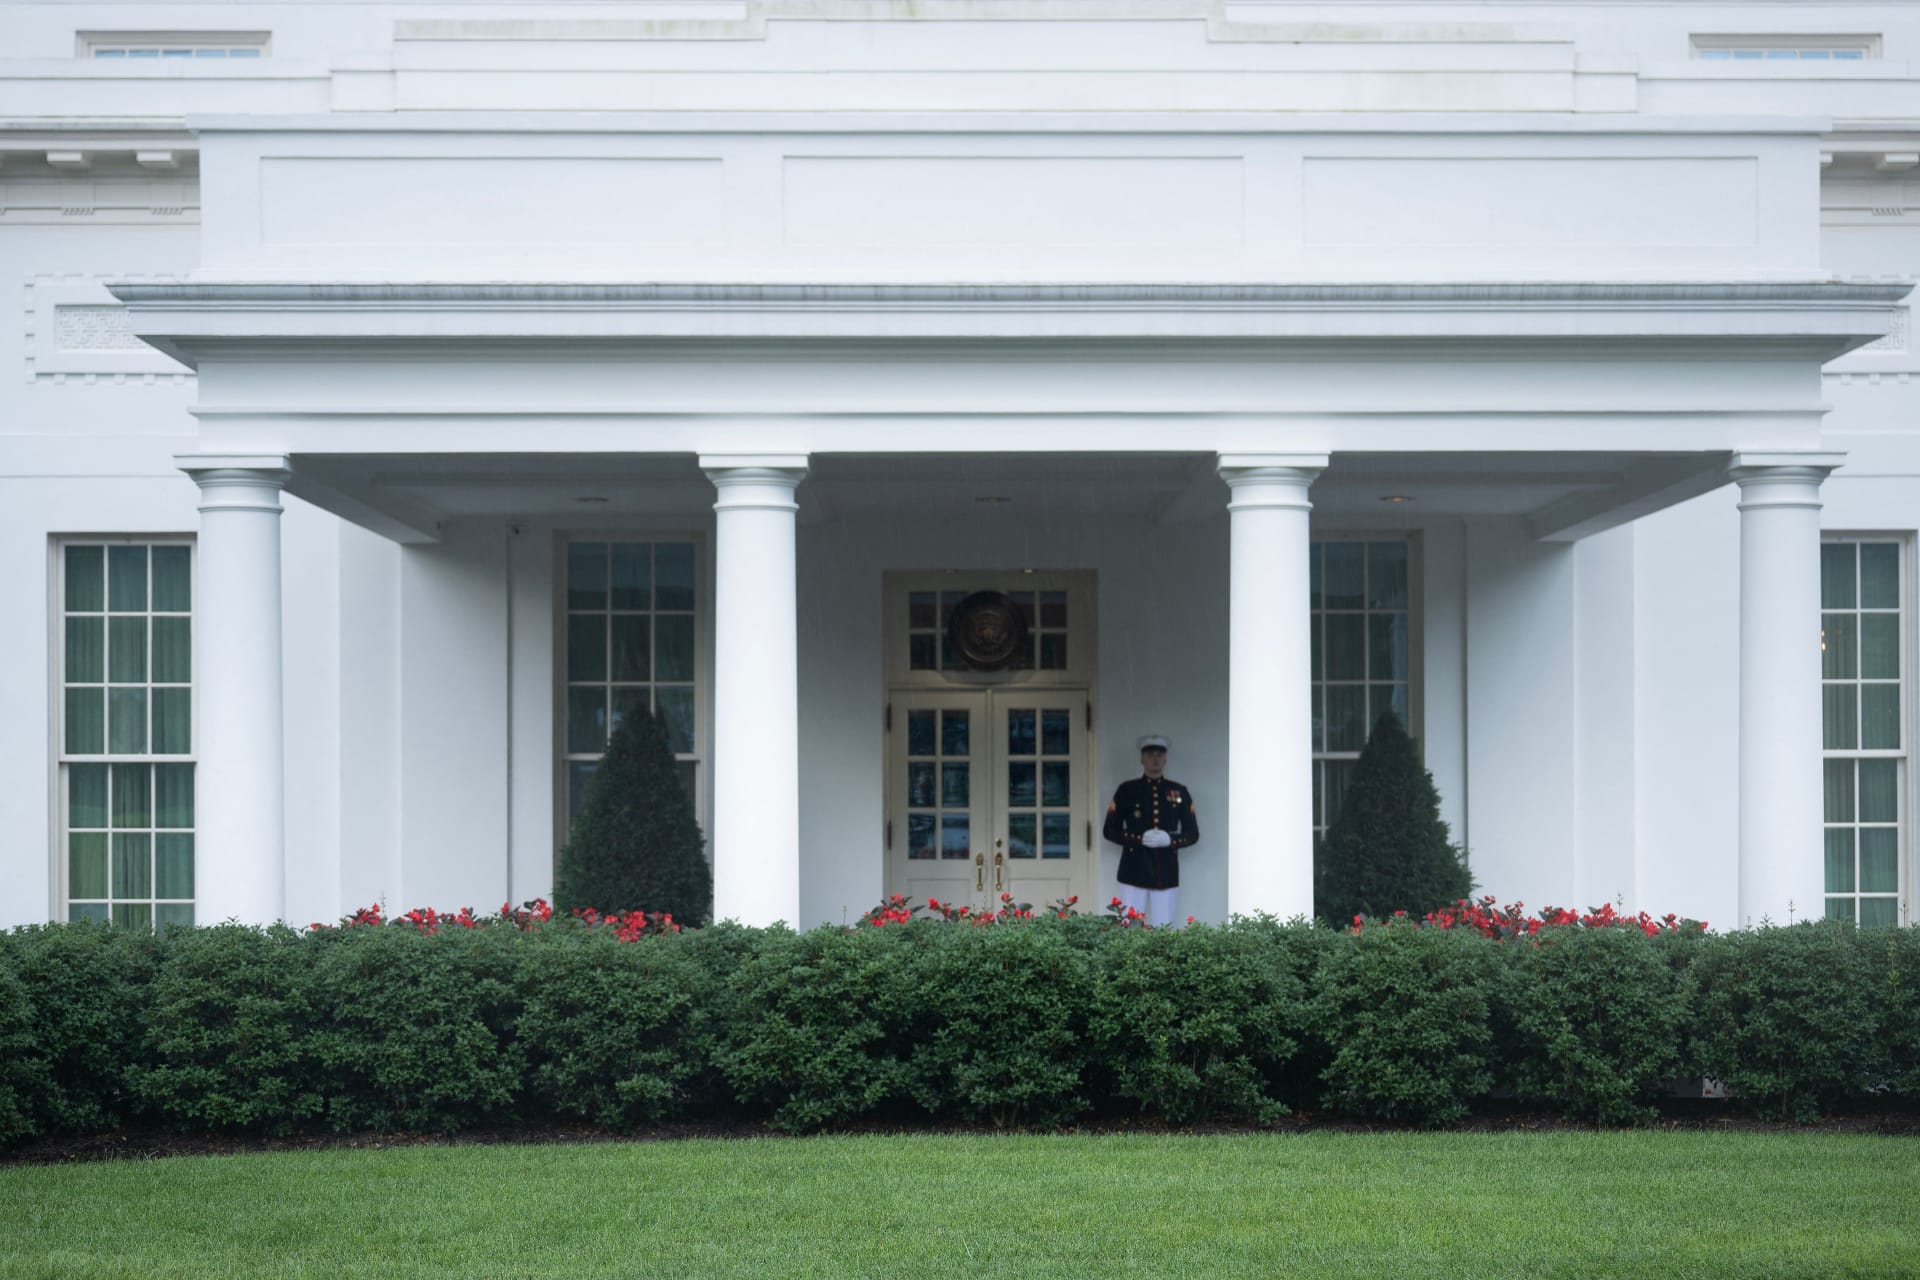 ما رد البيت الأبيض على سؤال عن هوية الشخص الذي جلب الكوكايين إلى المبنى؟